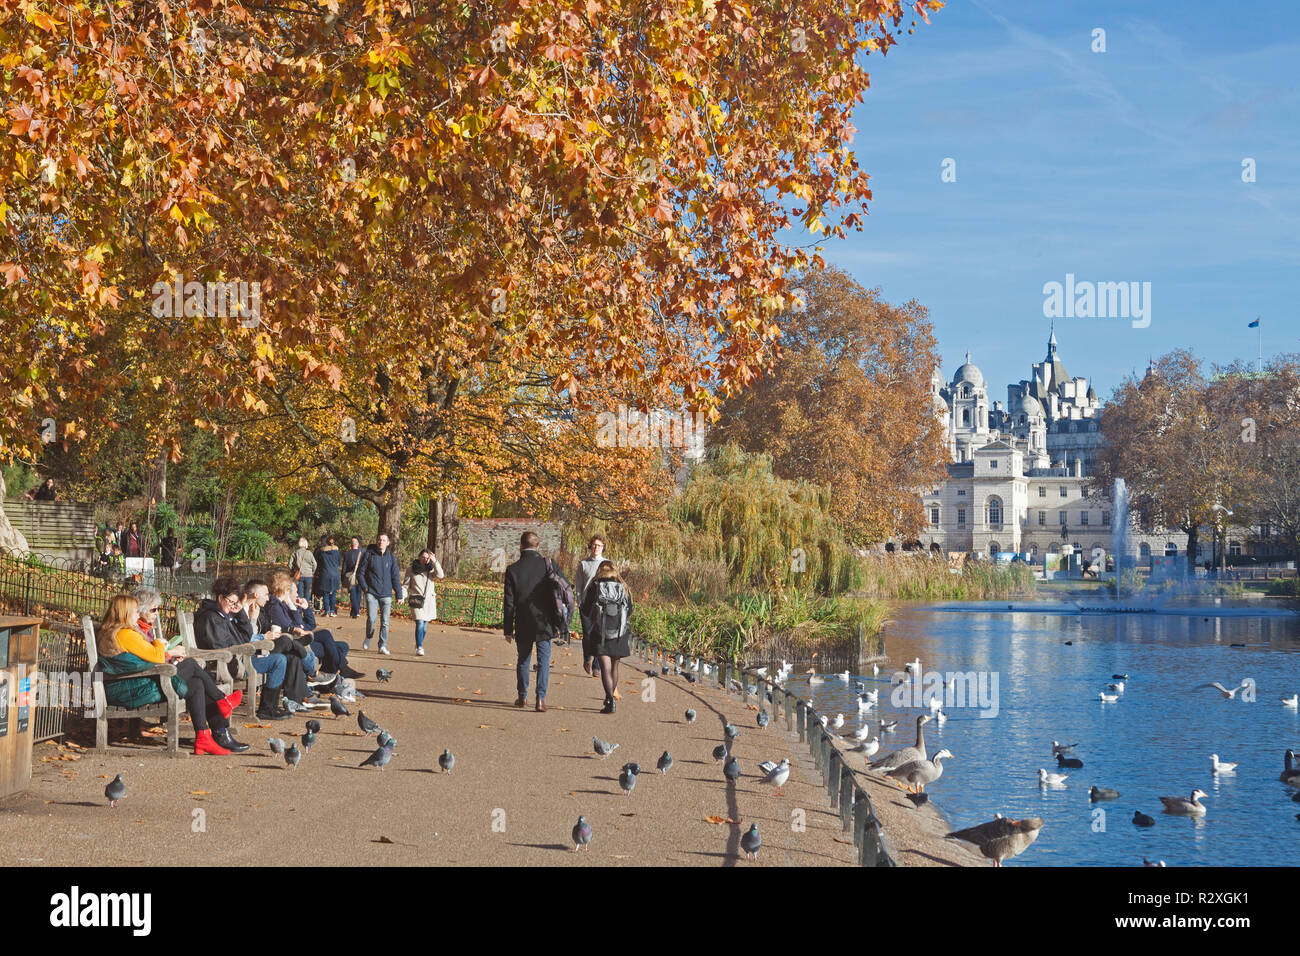 Londres, Westminster. La scène au bord du lac à St James's Park sur une chaude journée d'automne en novembre. Banque D'Images